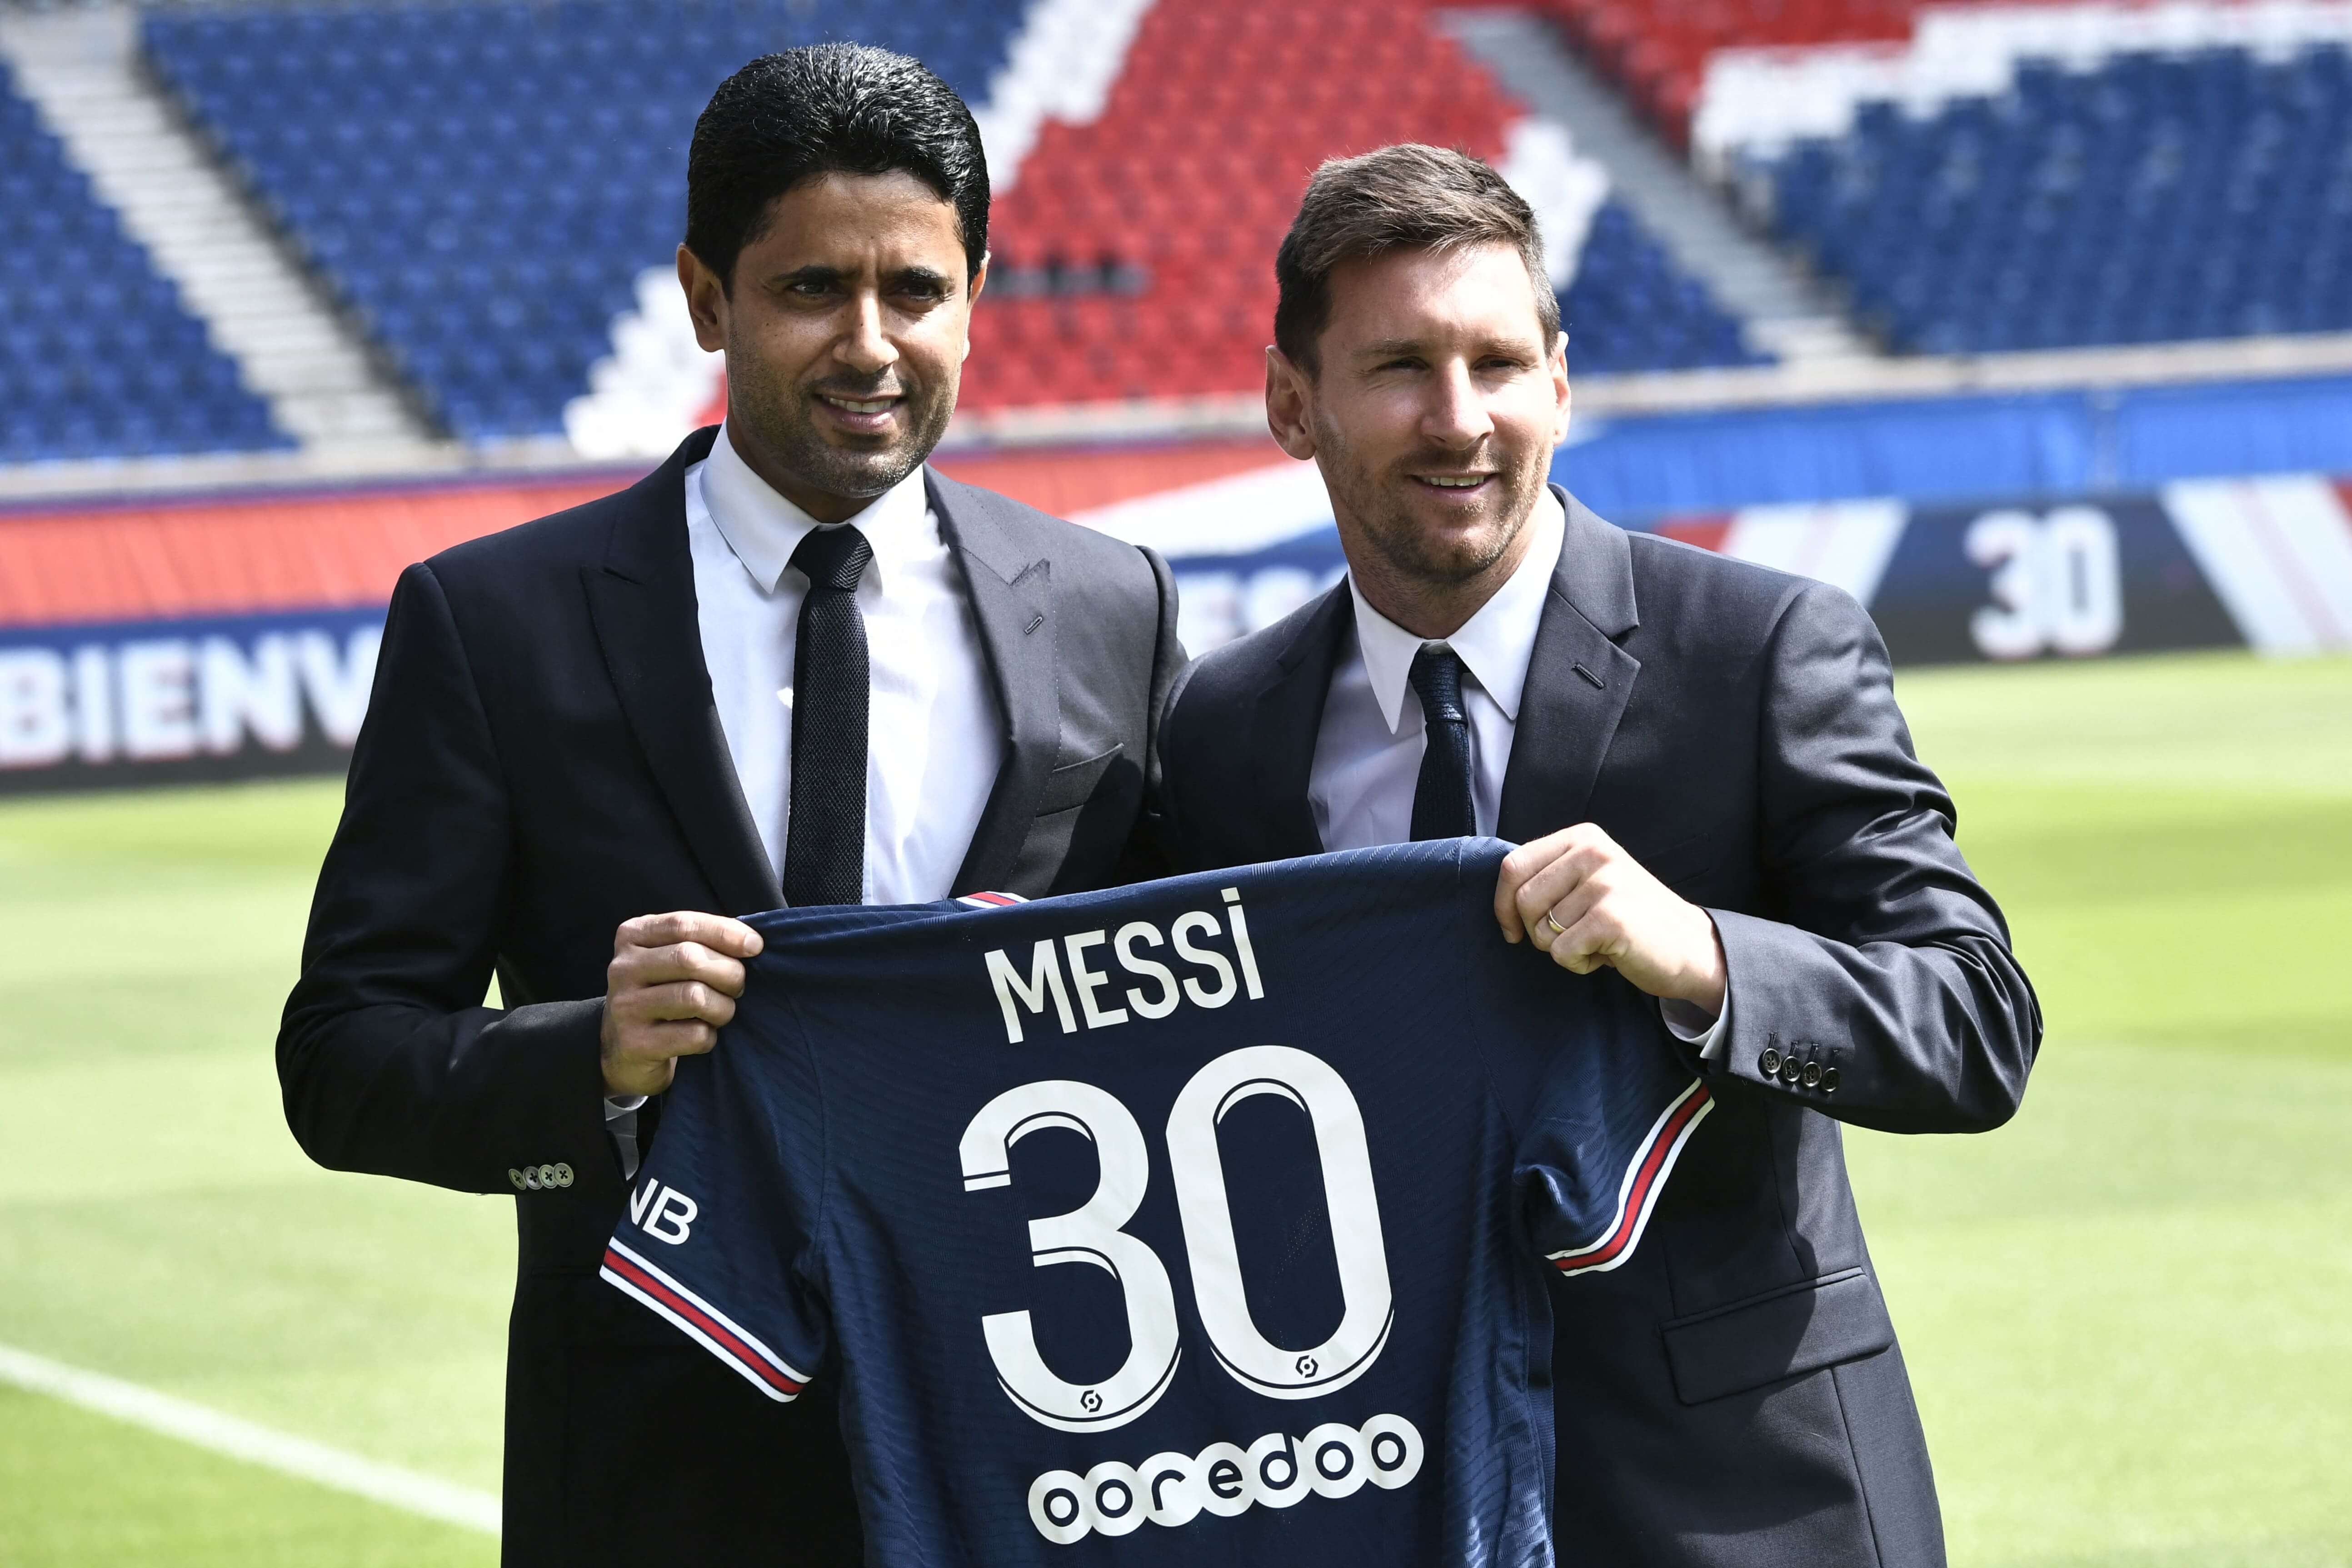 Messi fue presentado en el PSG y aseguró sentirse “ilusionado y con ganas” en esta nueva aventura